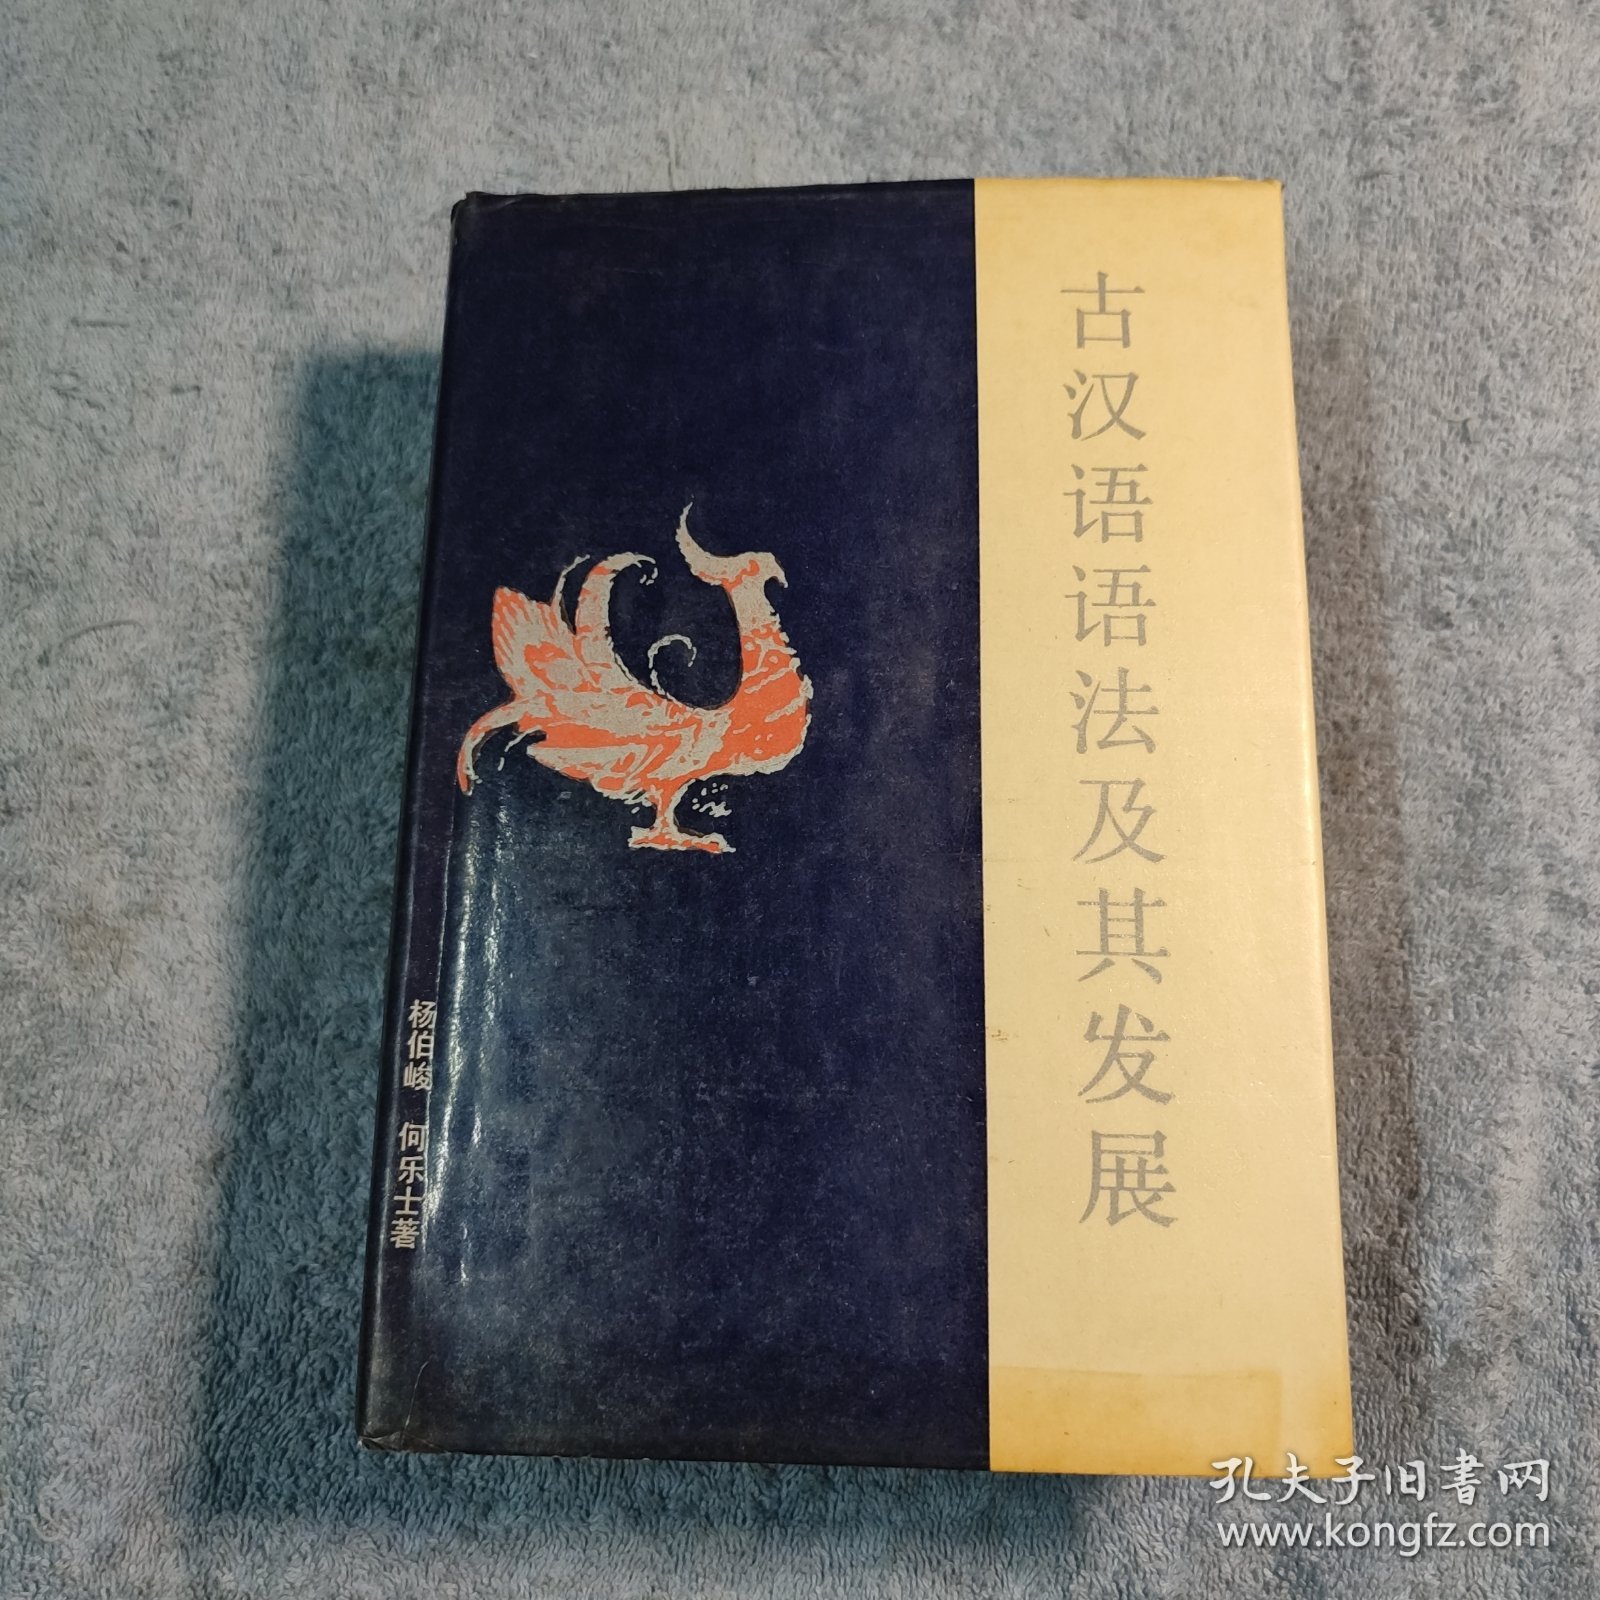 古汉语语法及其发展 (一版一印) 精装 正版 有详图